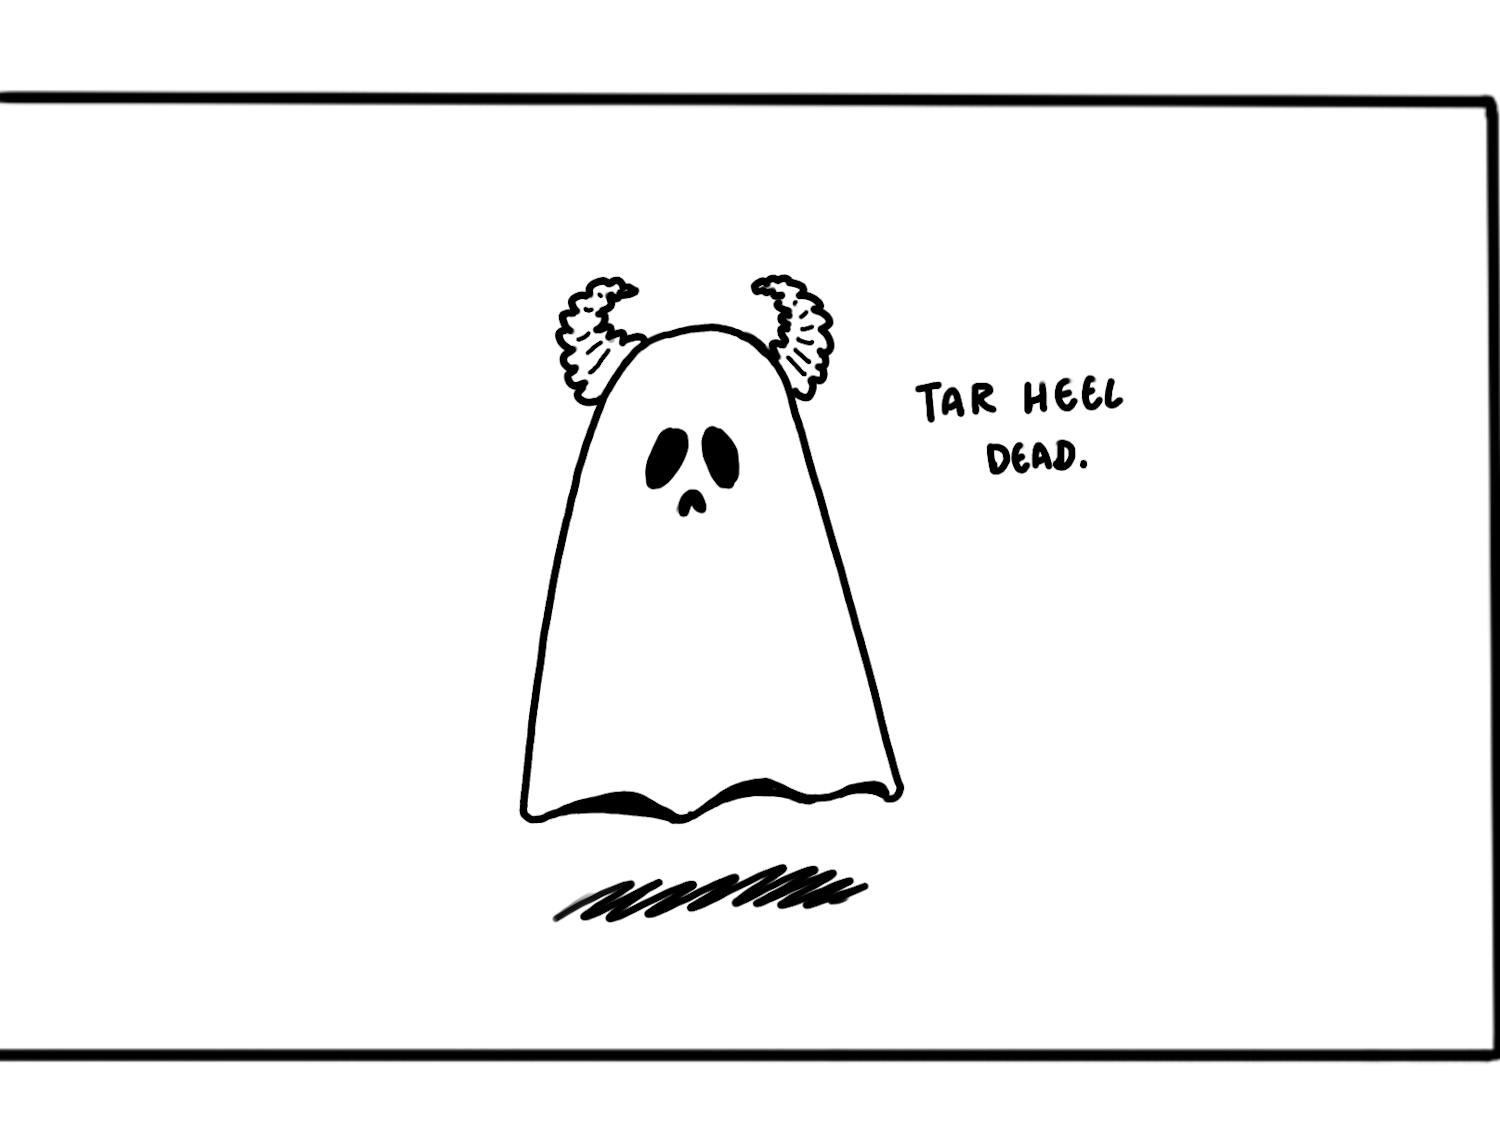 Cartoon: Tar Heel dead